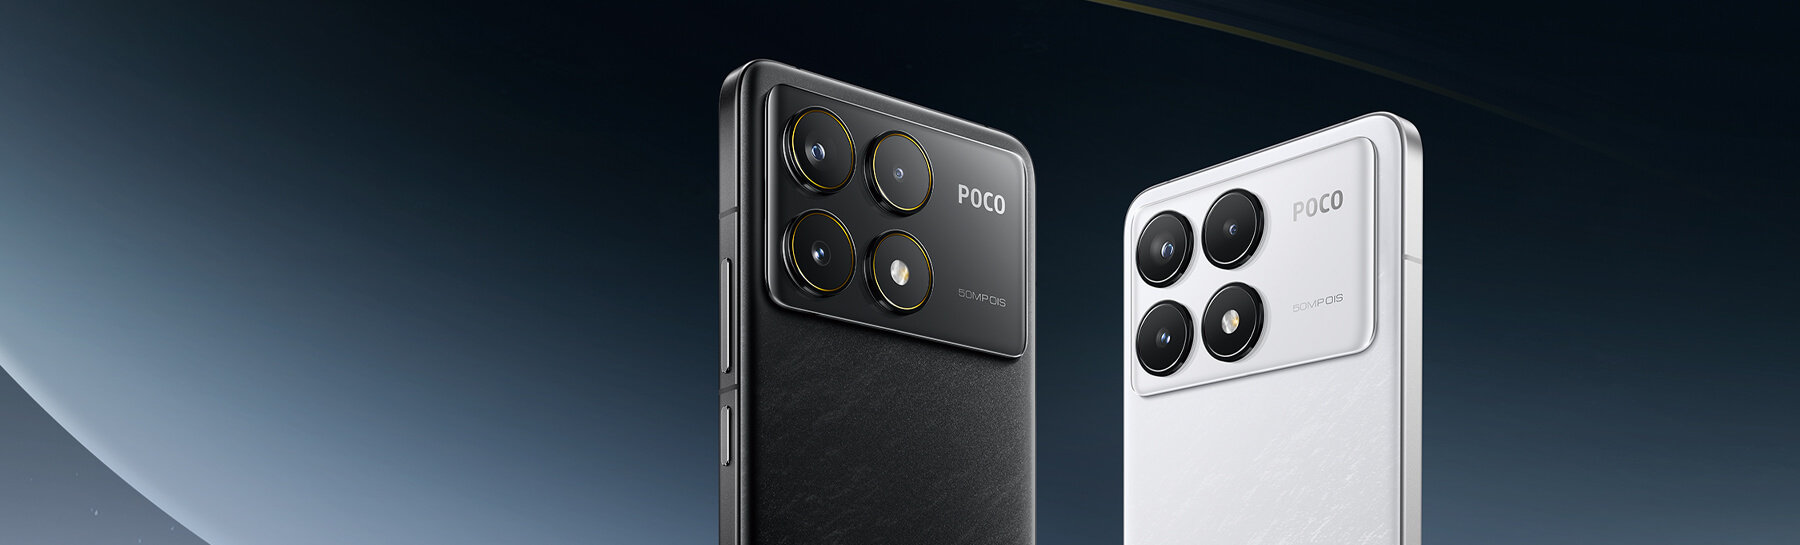 Nowe smartfony z serii POCO F6 już tu są!